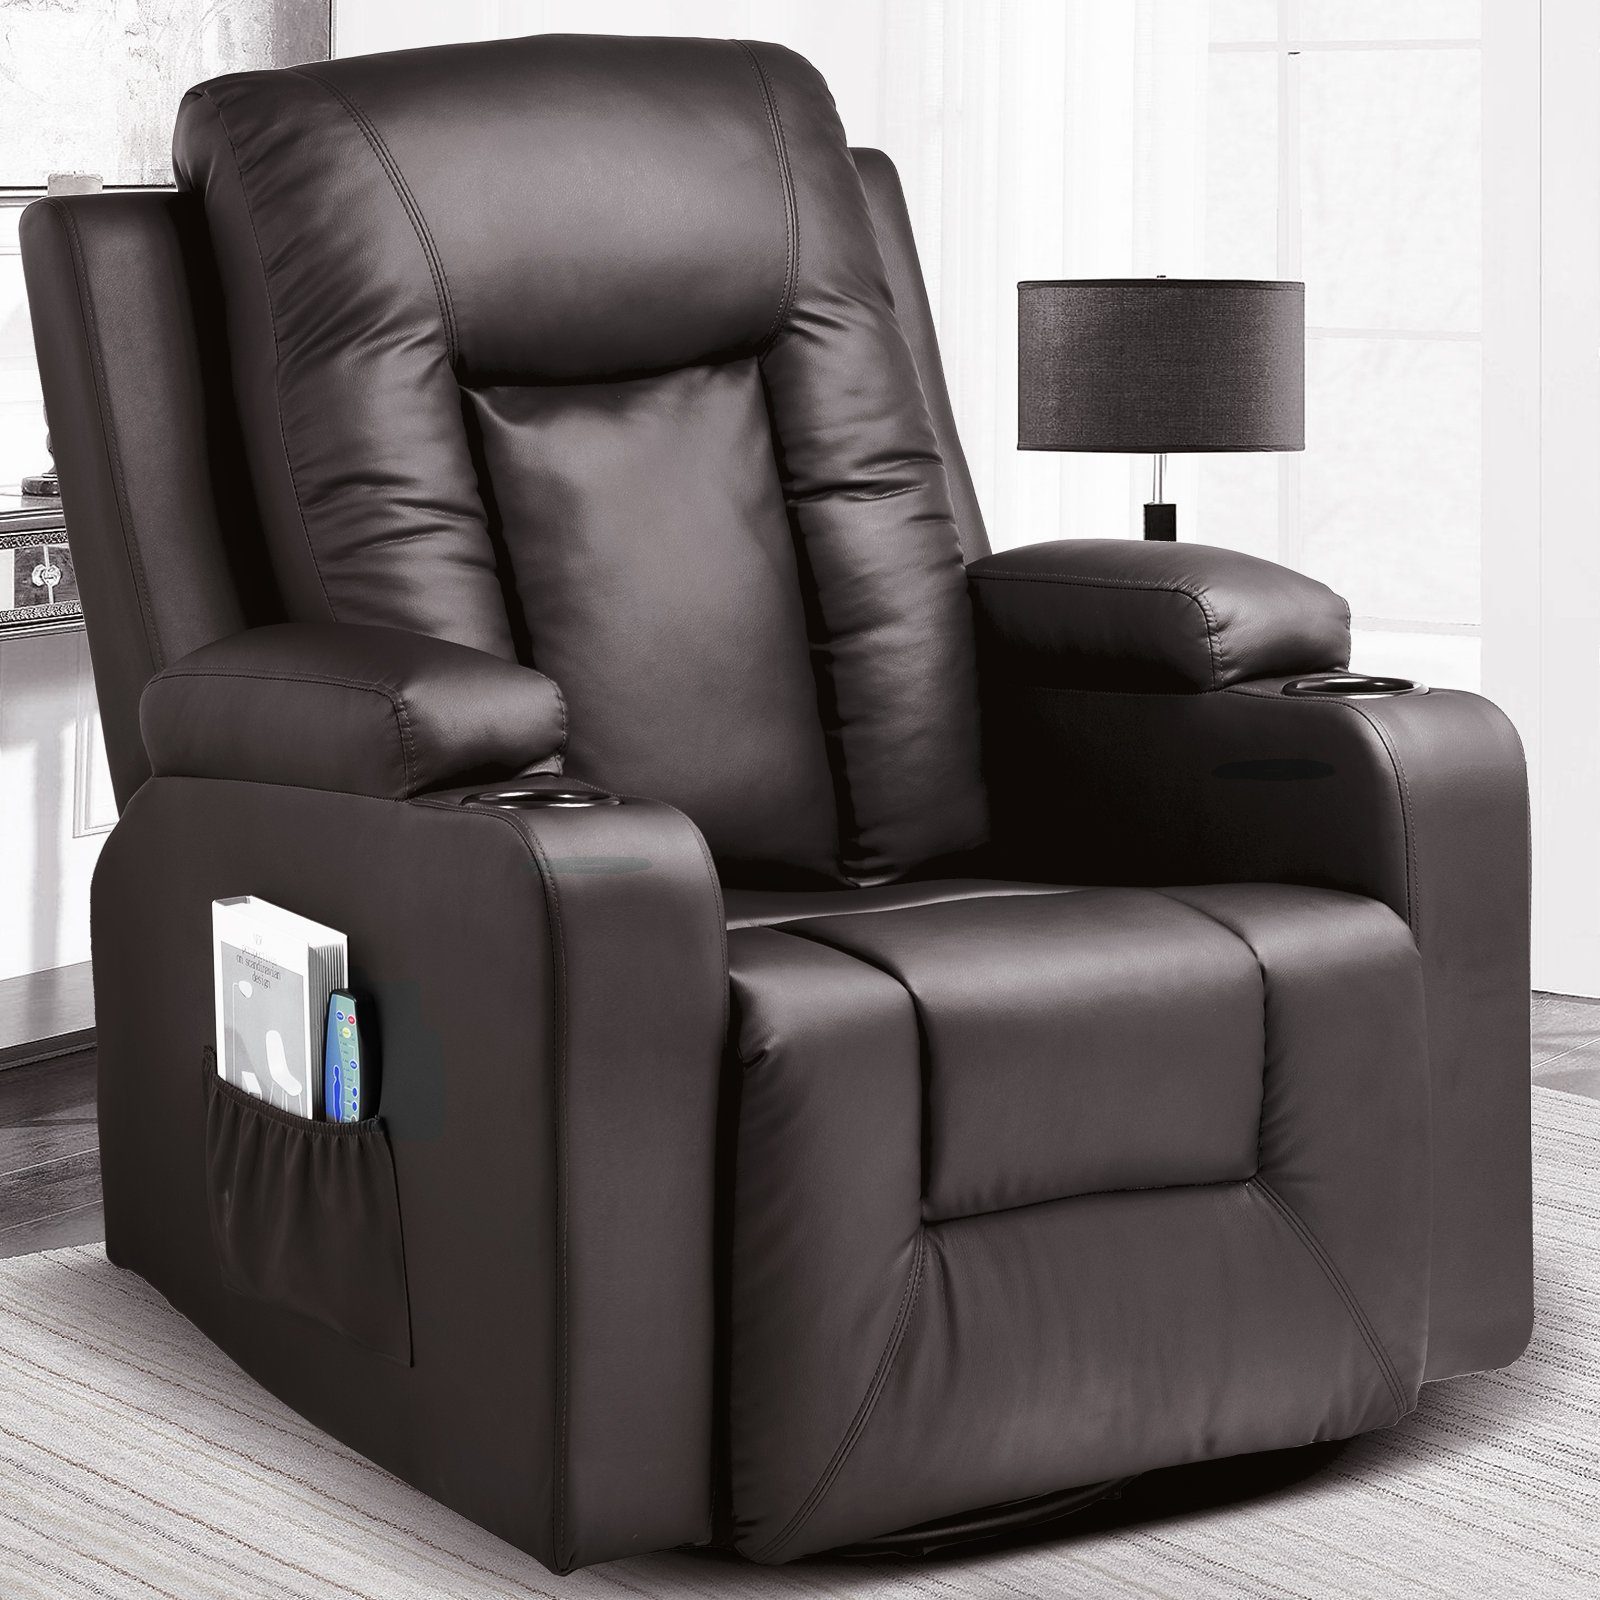 COMHOMA Relaxsessel TV Sessel mit Massage/Wippfun-und Wärmefunktion Heizung-Rückenlehne, mit 2 Seitentaschen und Getränkehalter Braun